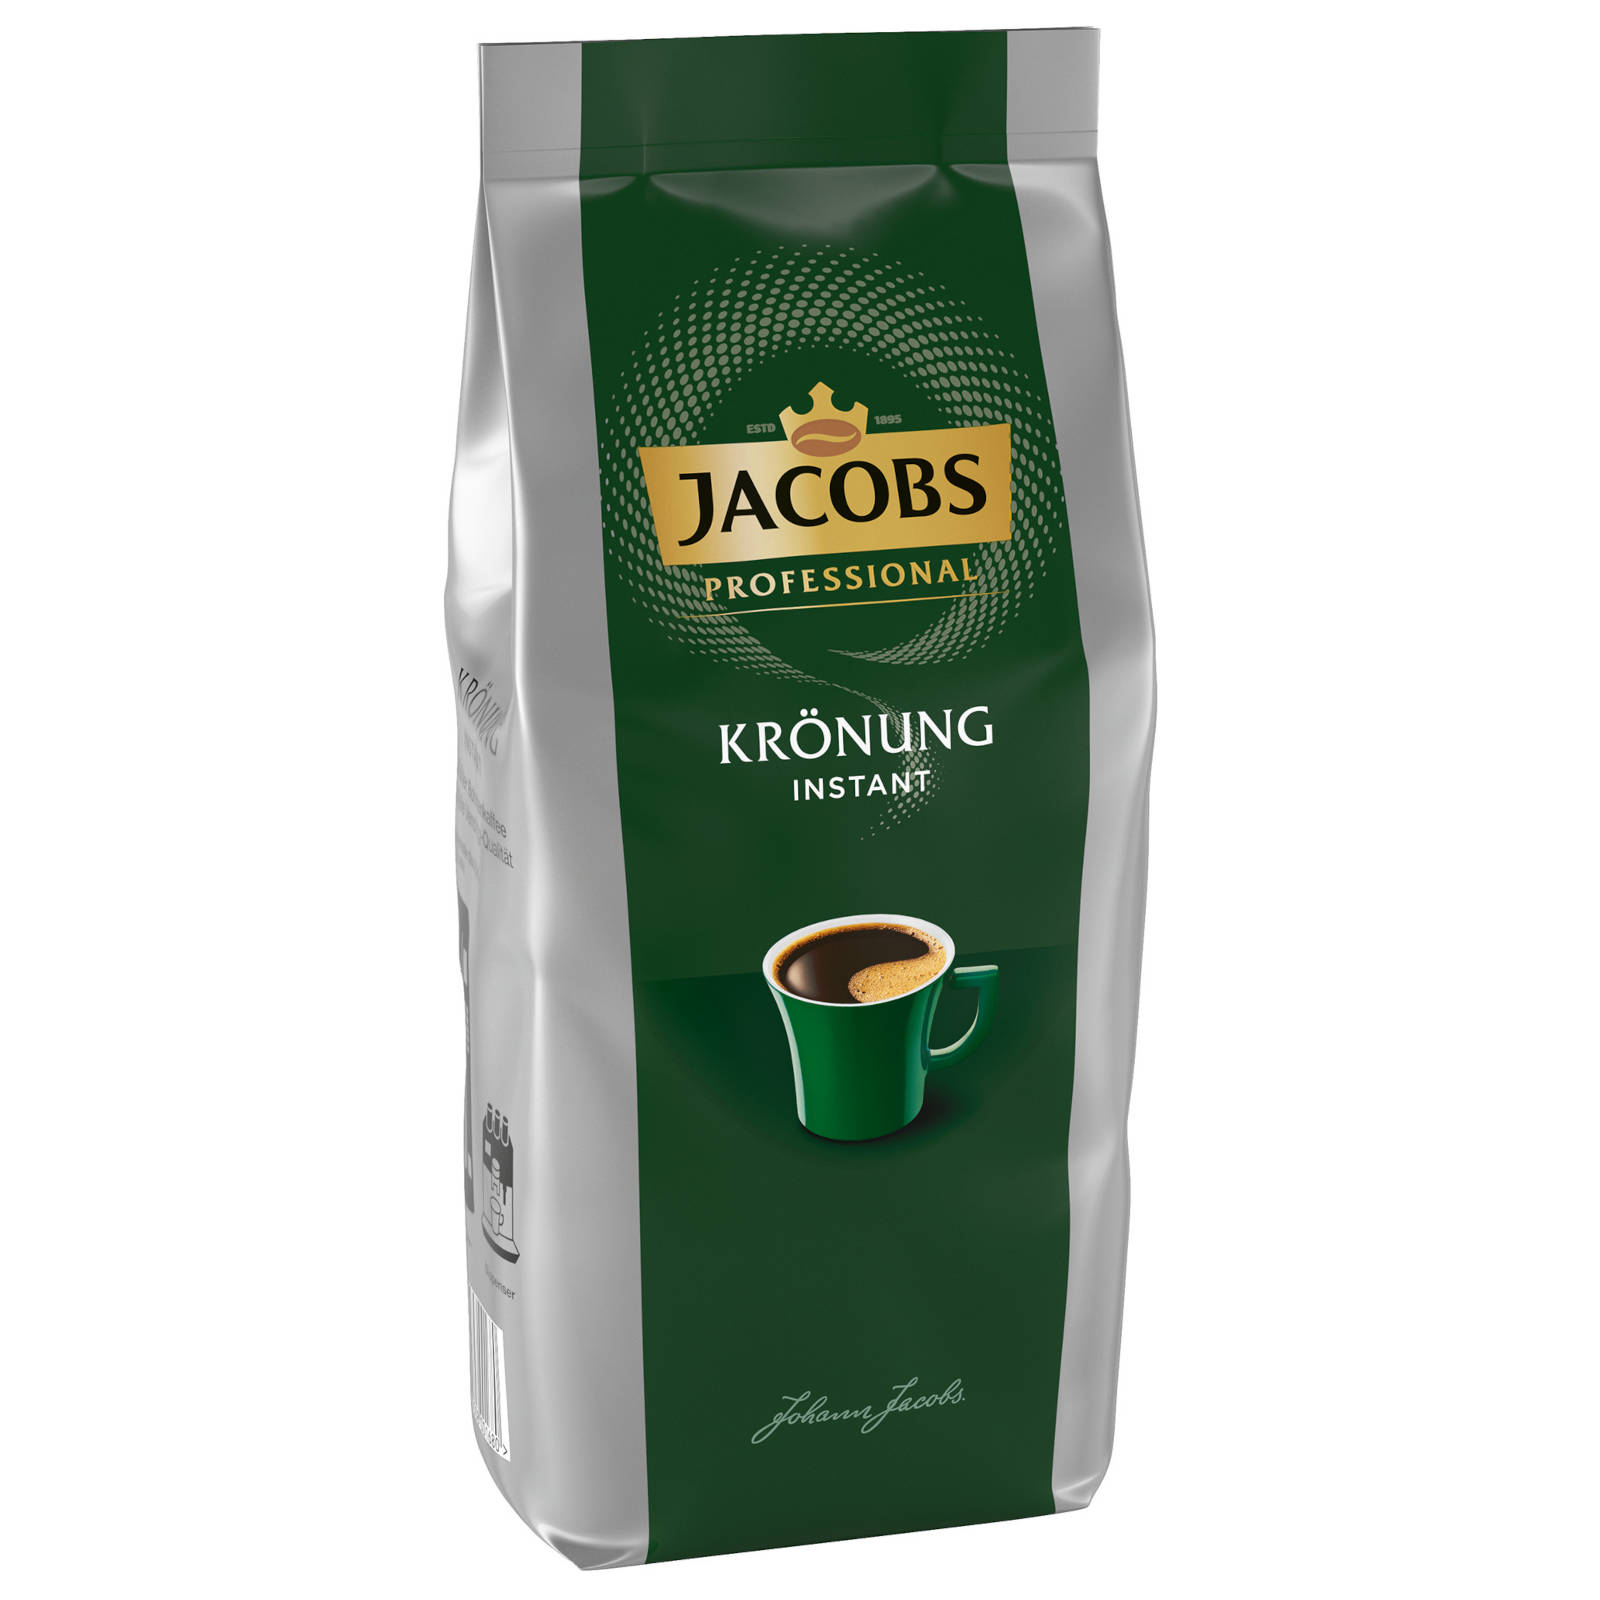 JACOBS Professional auflösen, Krönung heißem (In Heißgetränkeautomaten) g Instantkaffee 8x500 Wasser